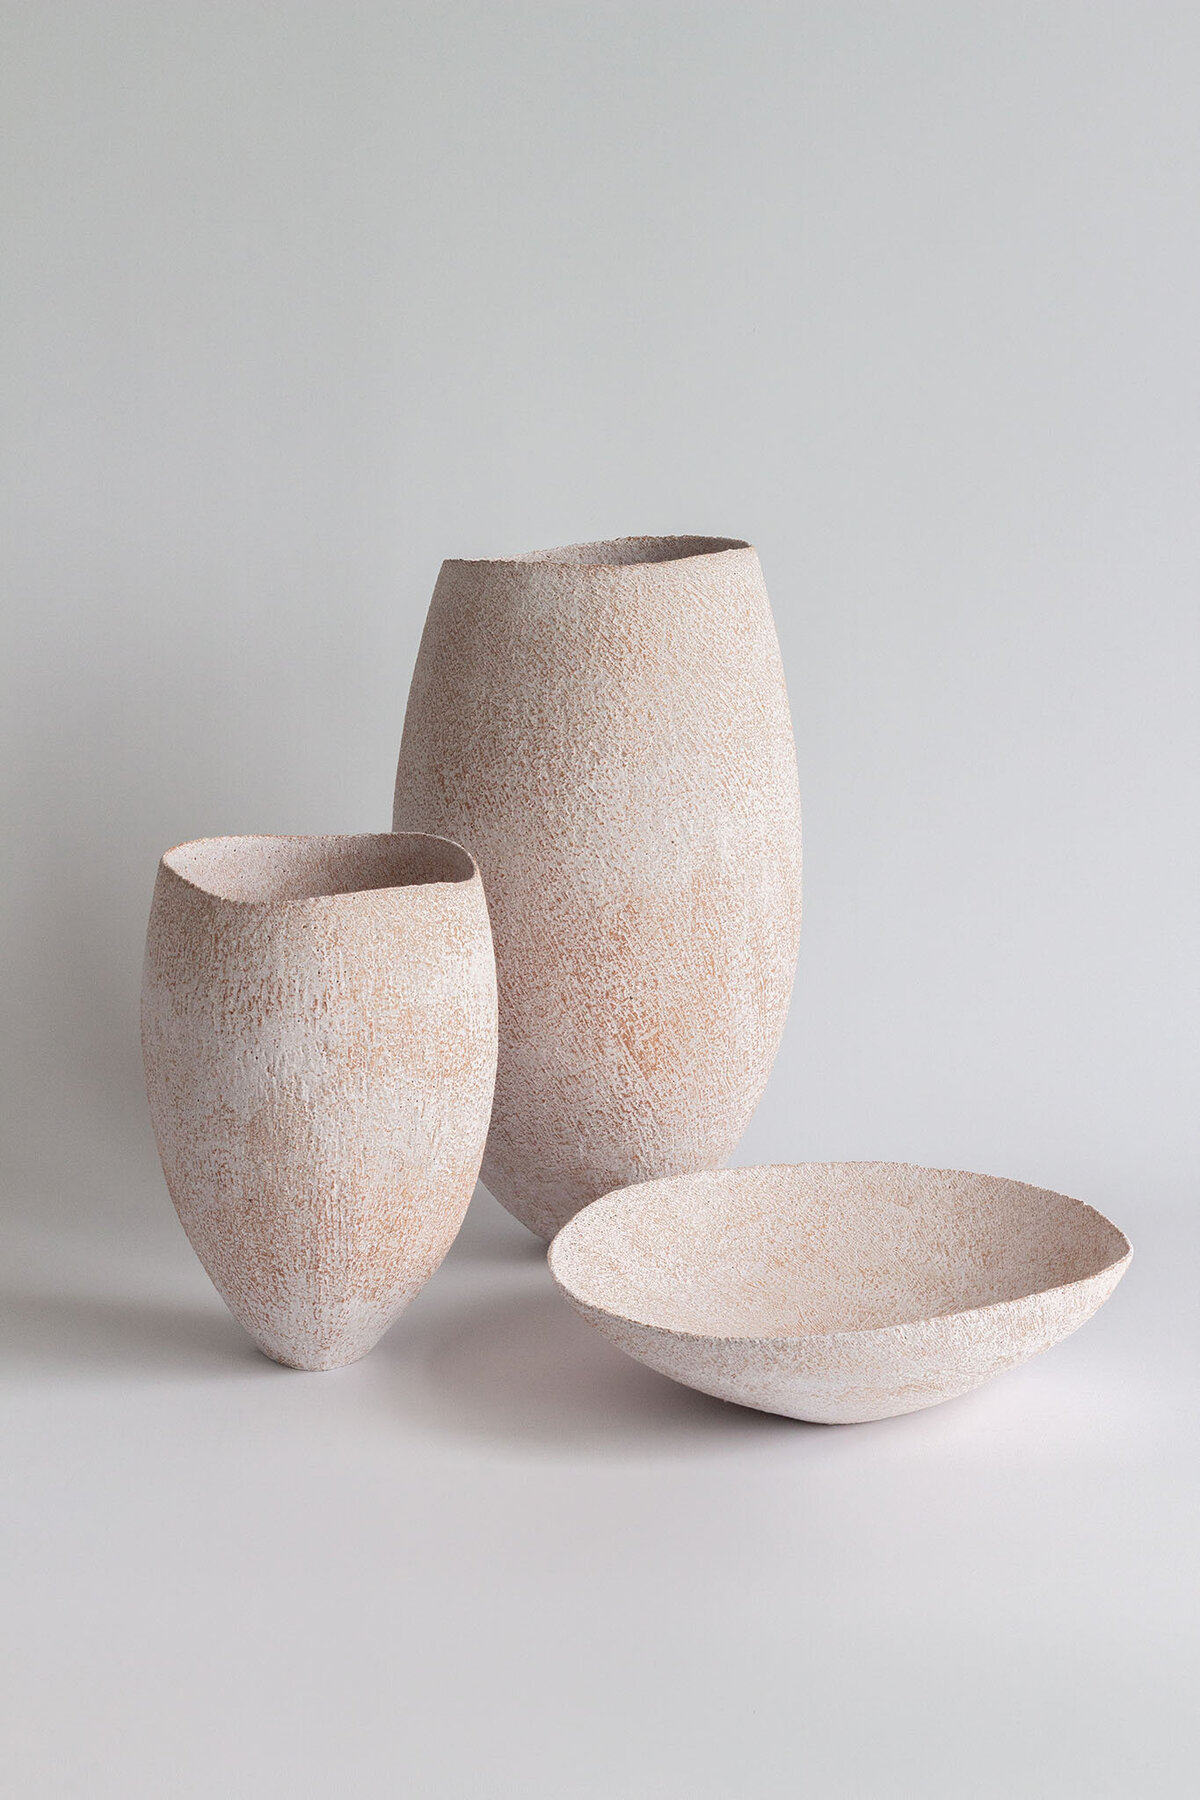 YashaButler-Ceramic-Lithic-Collectio-Pergamon-No18-No21-No24-25-01-2022 (1)-2048px